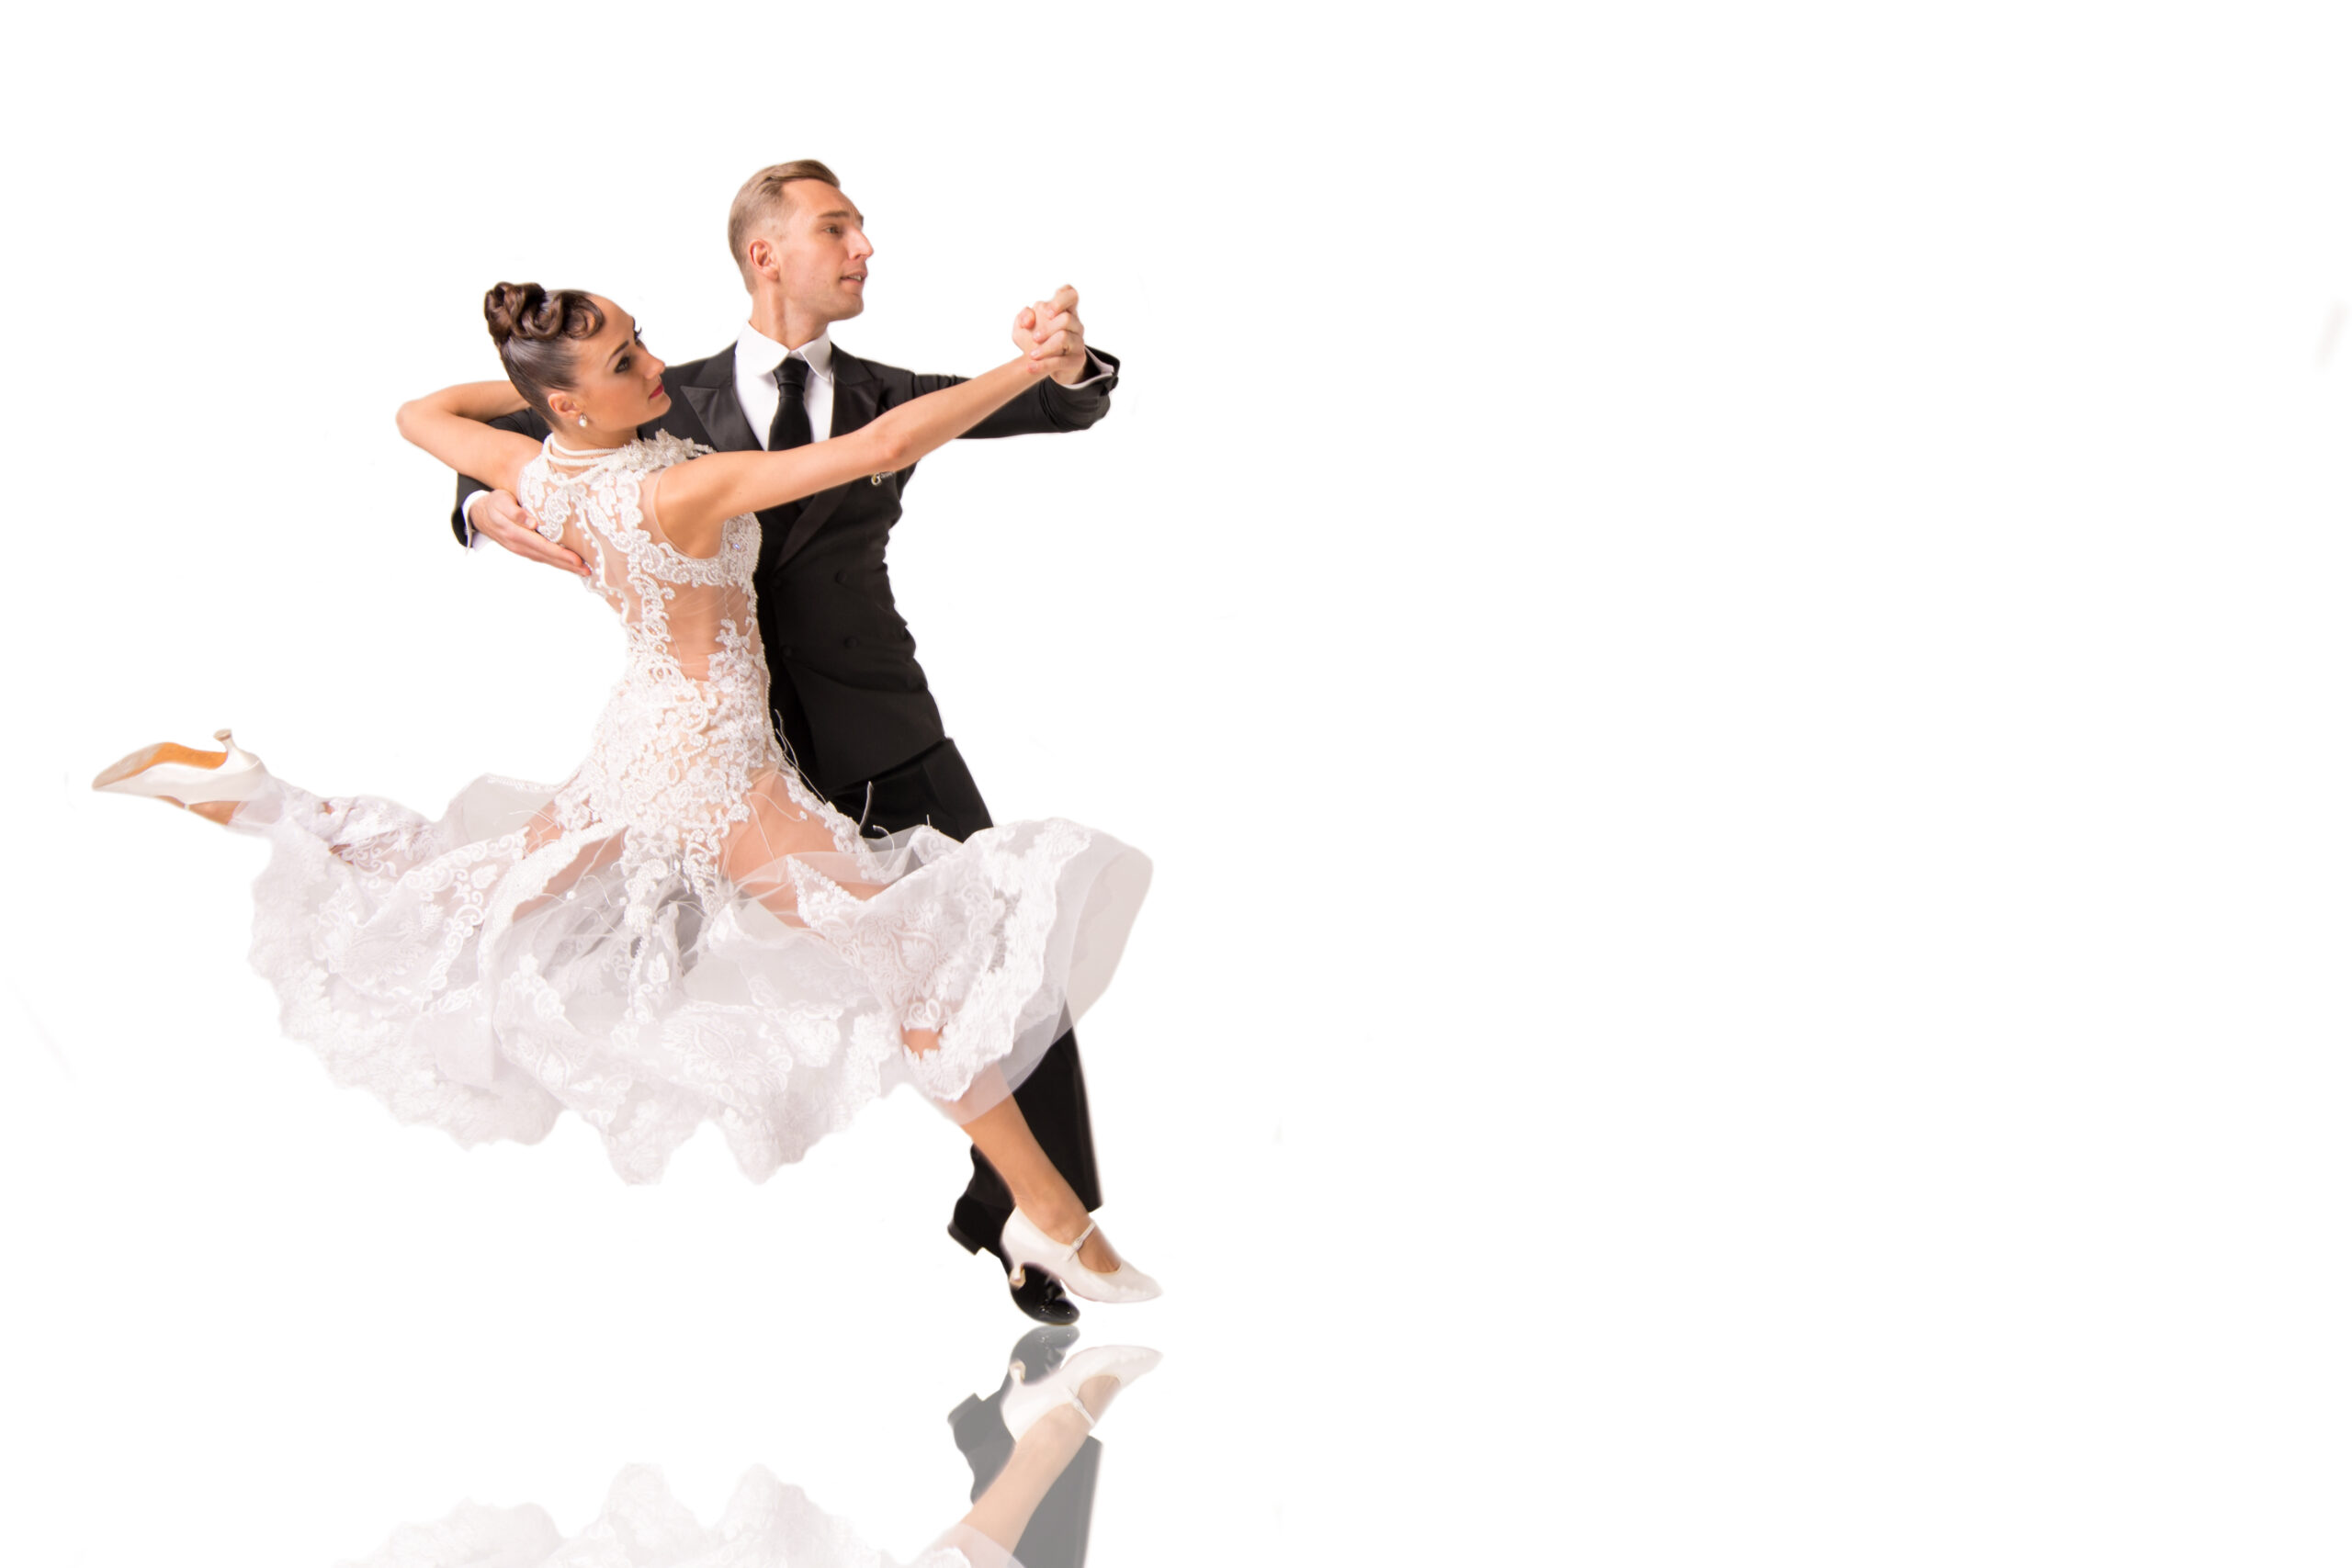 躍動と楽しさが融合したダンス – クイックステップを深く知る